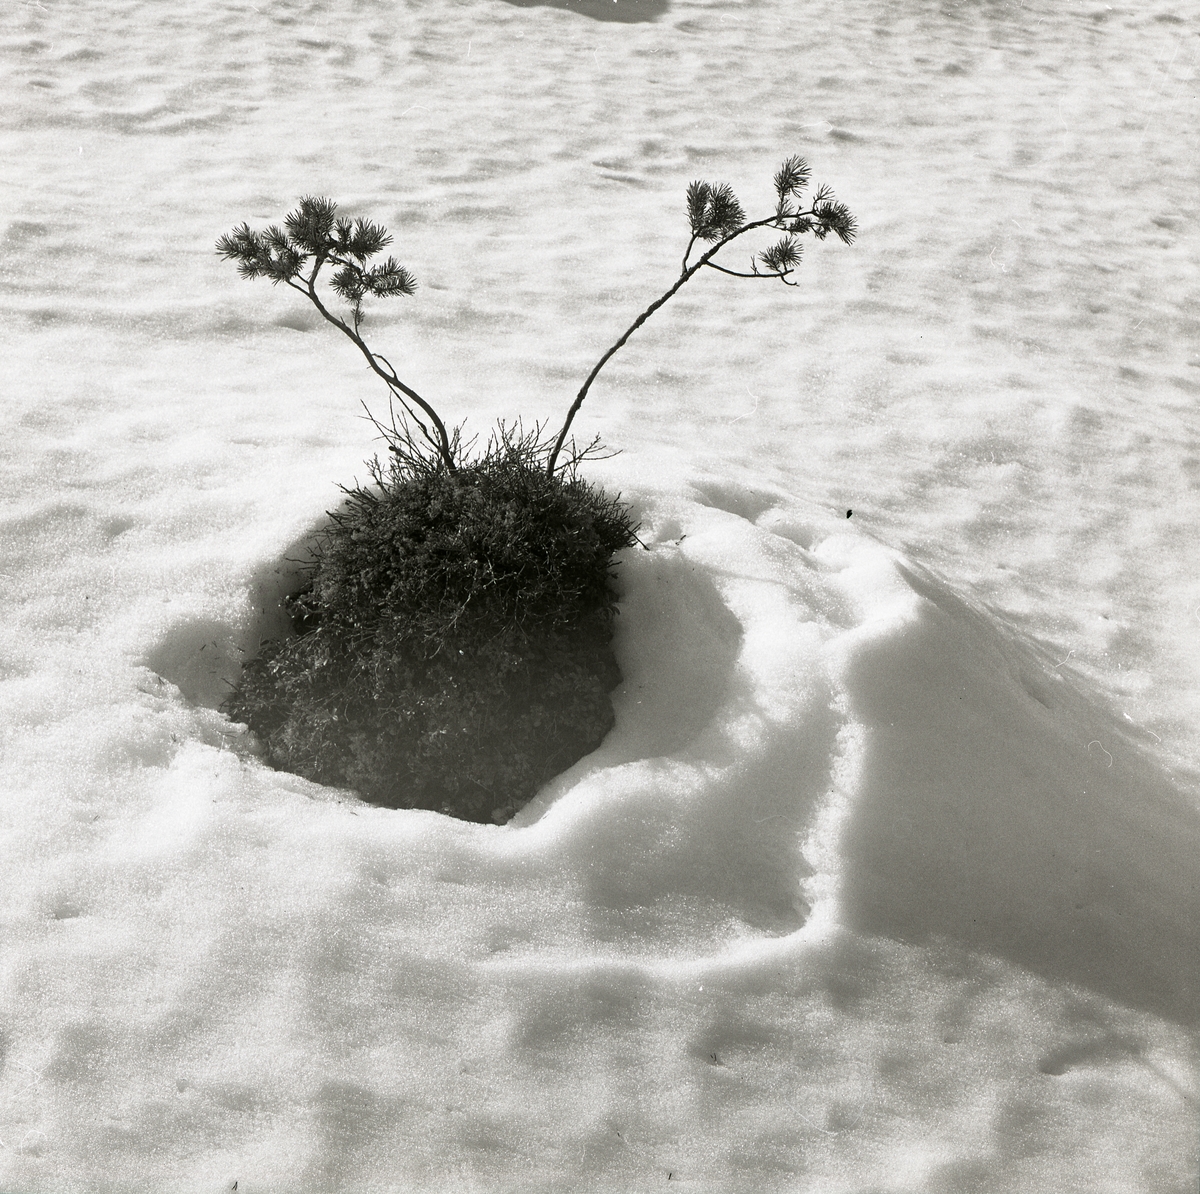 Två små tallar växer på en grästuva och sticker upp ur snön vid Stråsjön, april 1978.